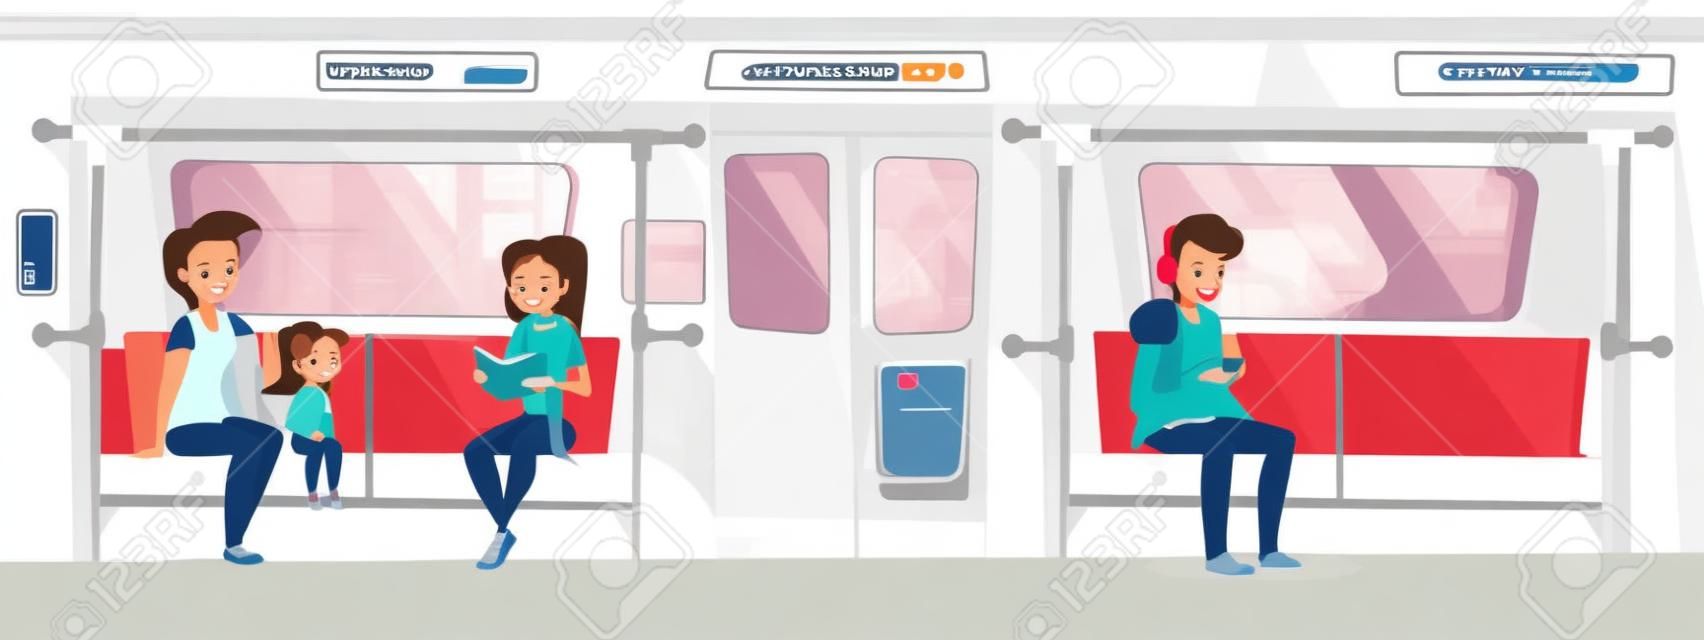 Leute in der U-Bahn-Zugvektorillustration. Junge Frau mit Tochter Mädchen im U-Bahn-Lesebuch und Lächeln, jugendlicher Junge, der auf Sitz sitzt und Musik in Kopfhörern vom Smartphone hört